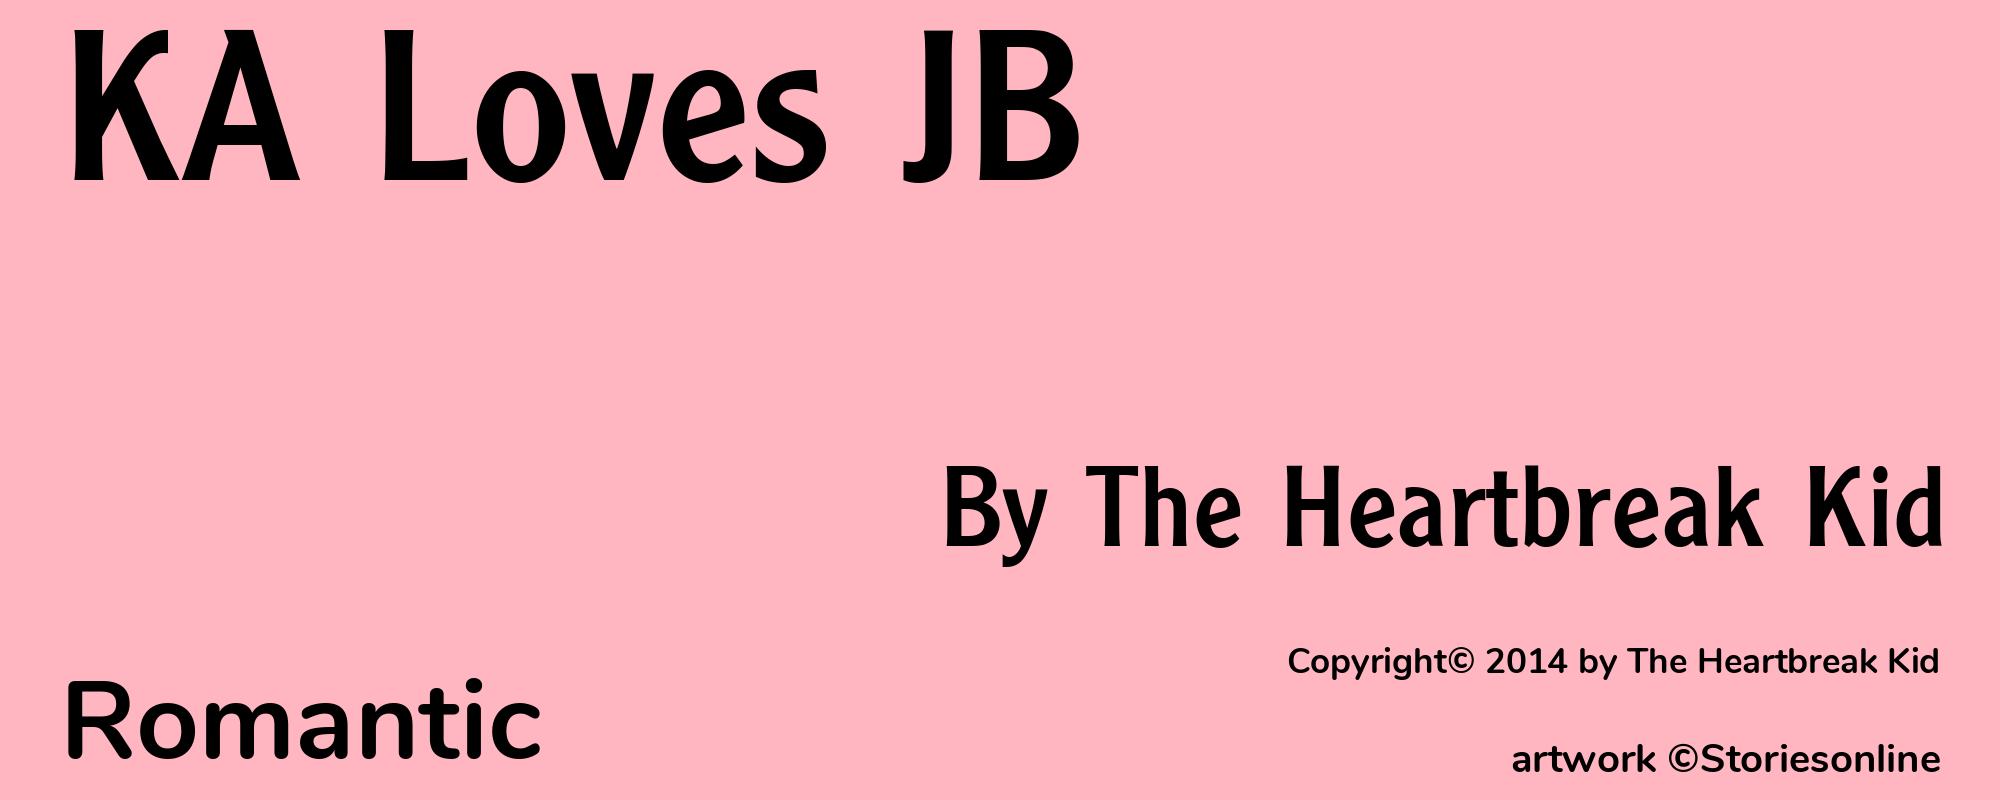 KA Loves JB - Cover